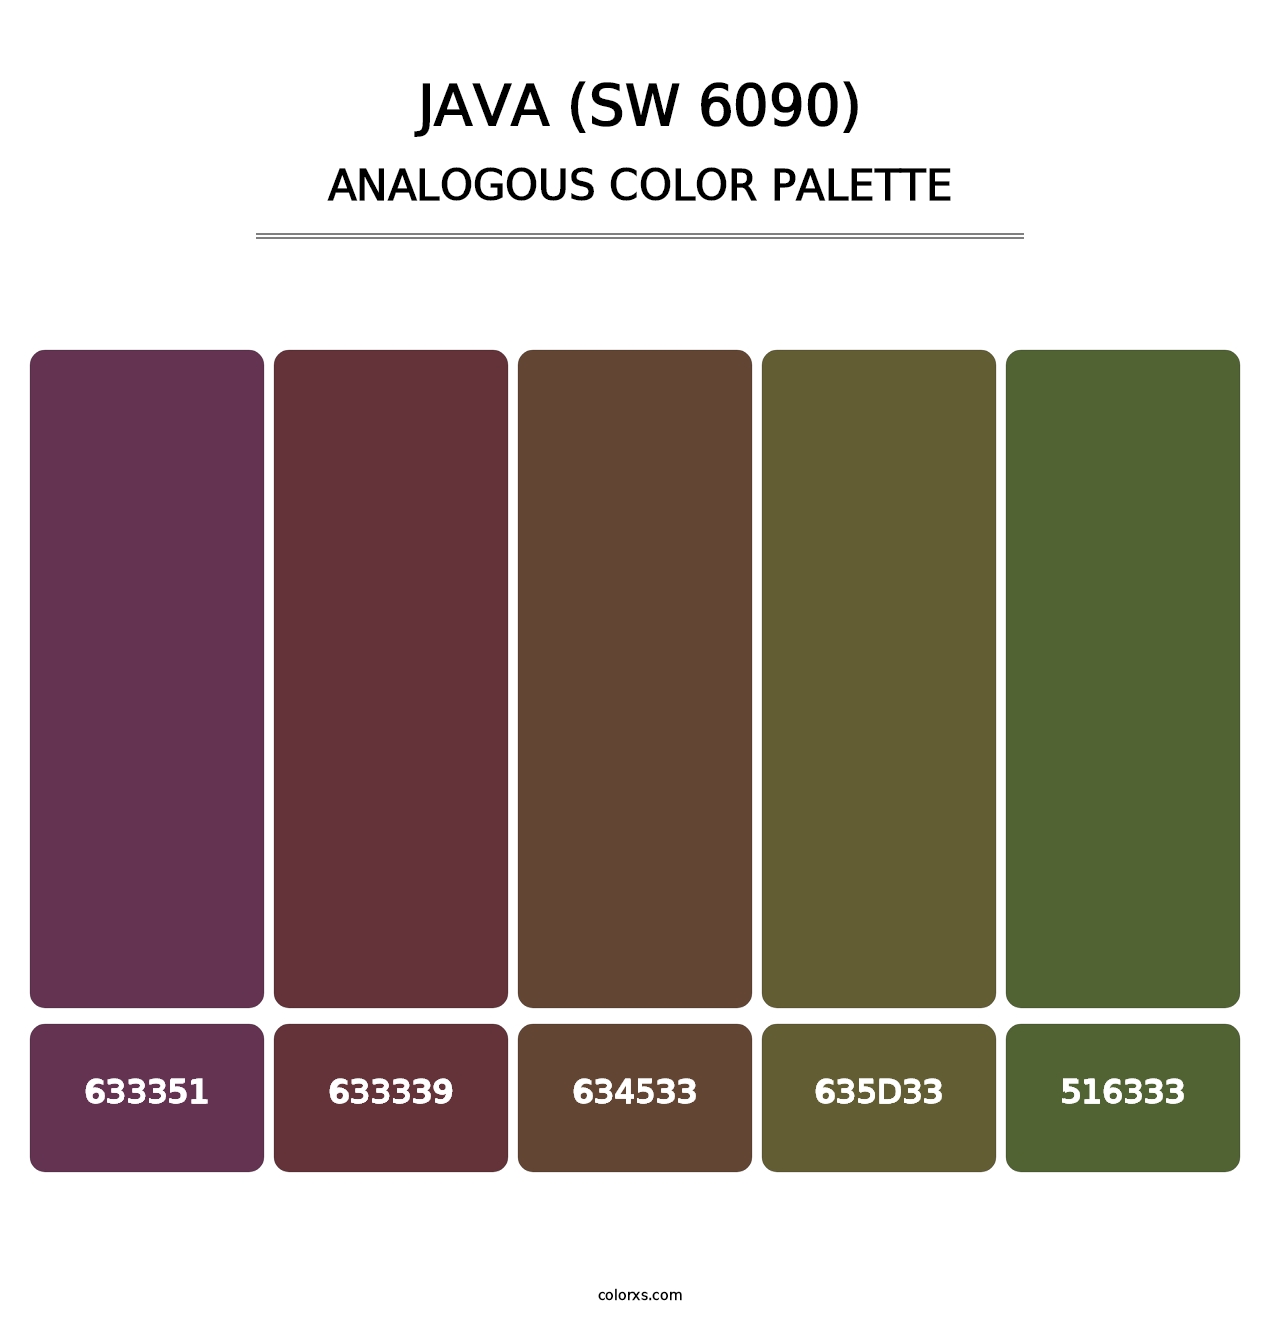 Java (SW 6090) - Analogous Color Palette